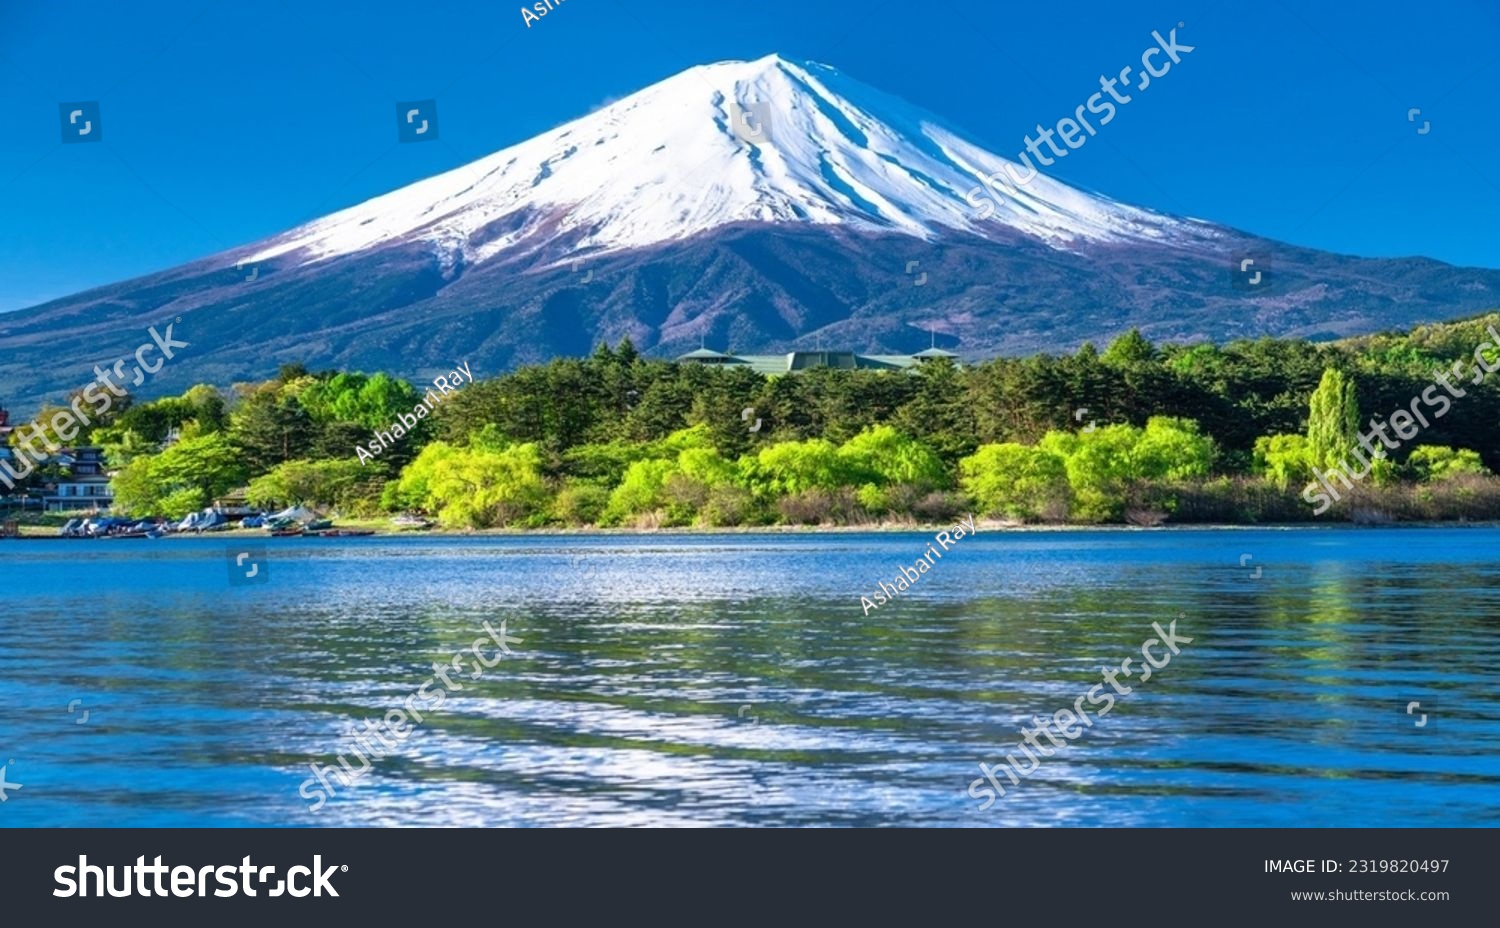 beautiful Mountain of Japan Mount Fuji #2319820497